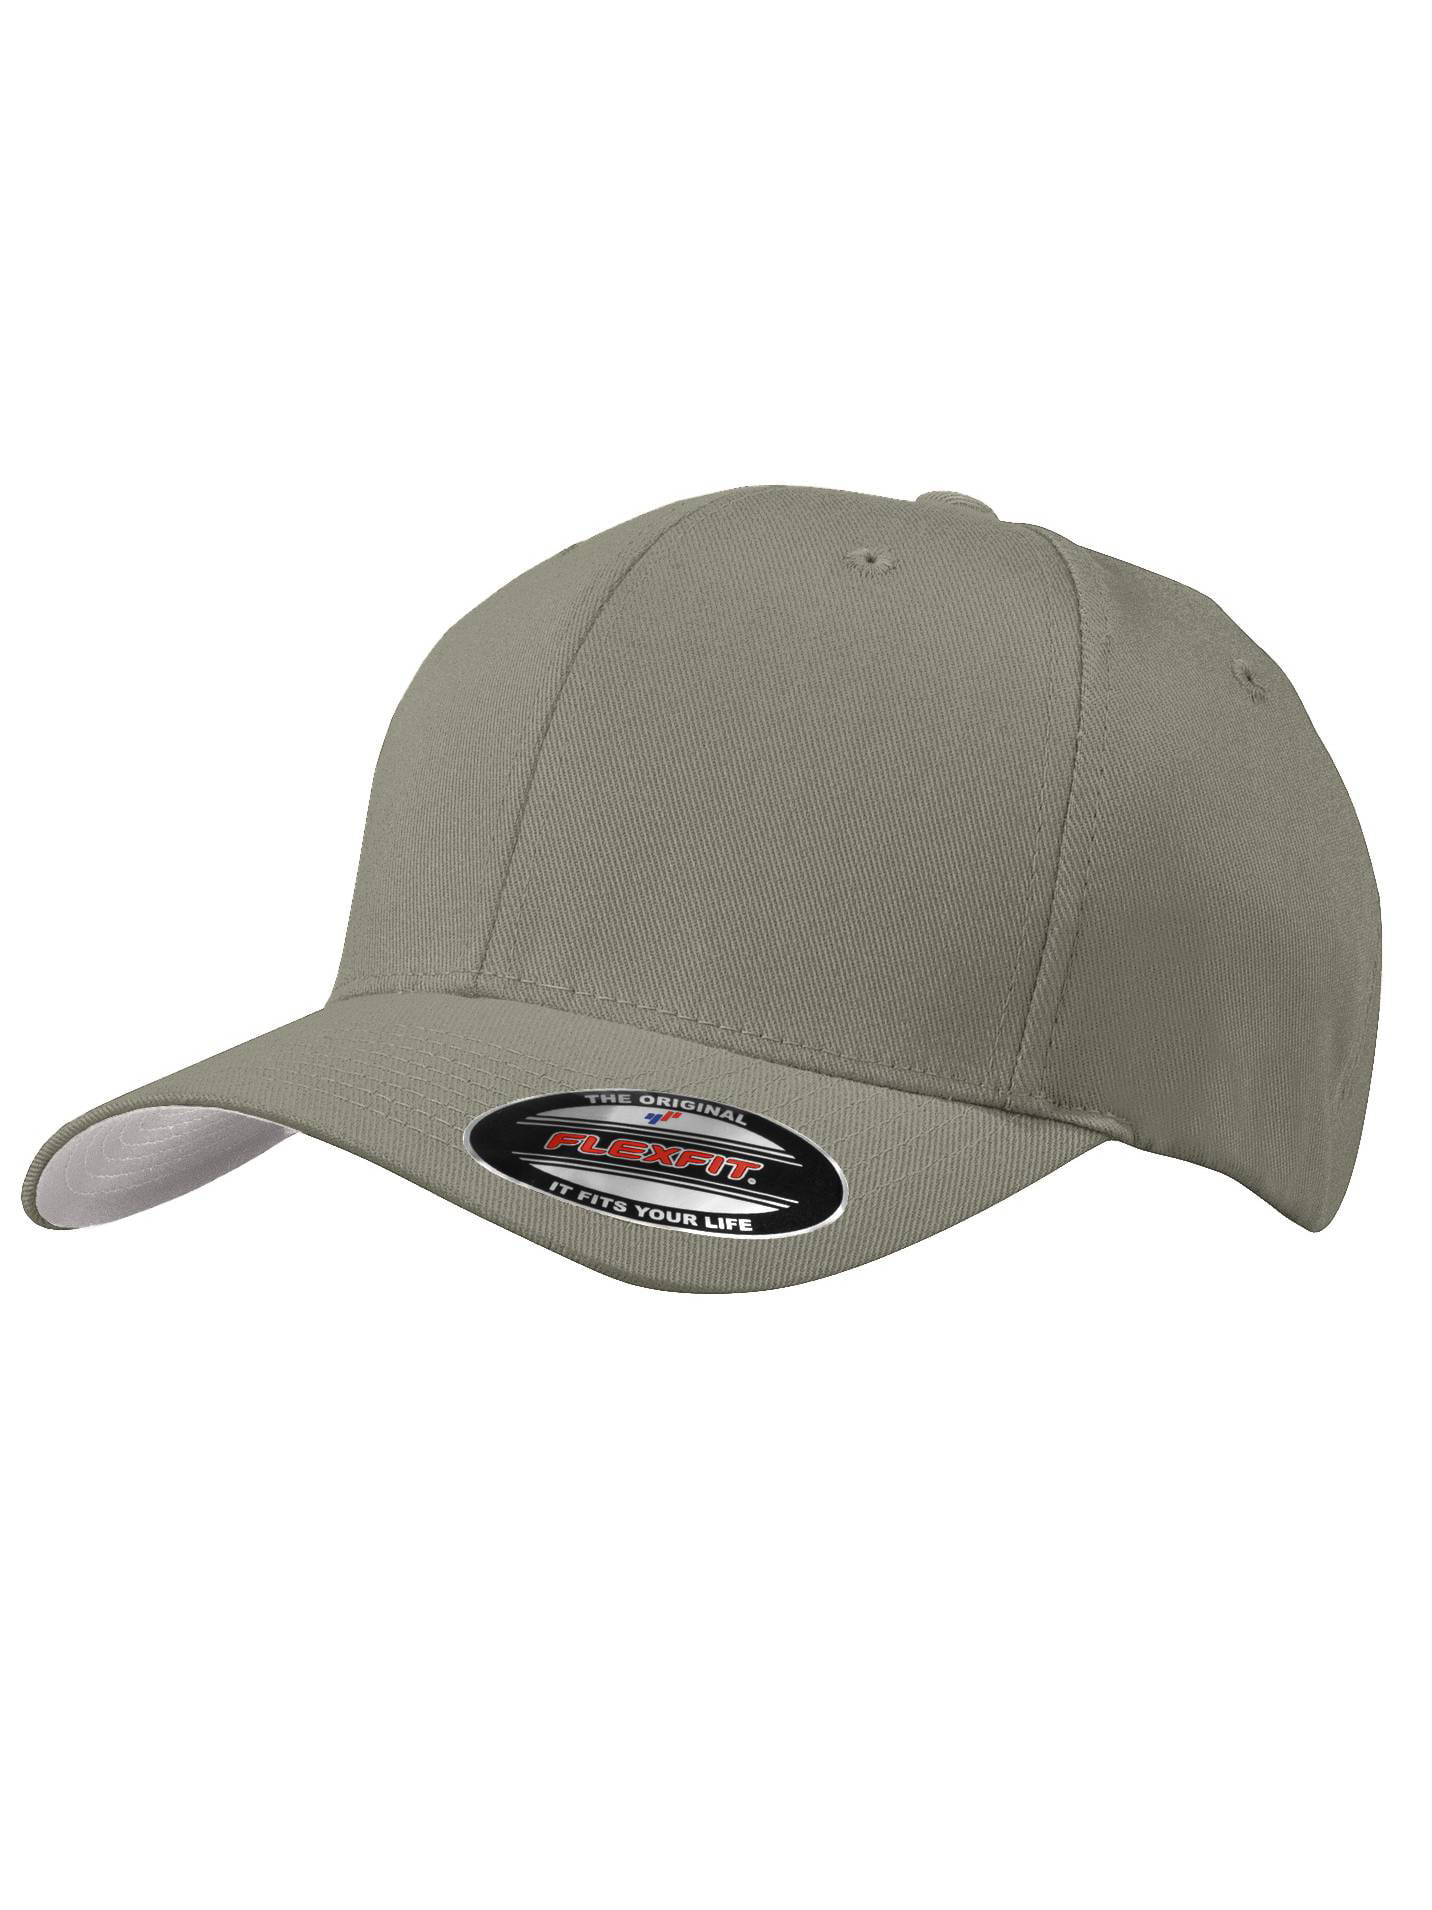 Top Flex - Fit Small/Medium Headwear Olive Cap Baseball - Drab/Green